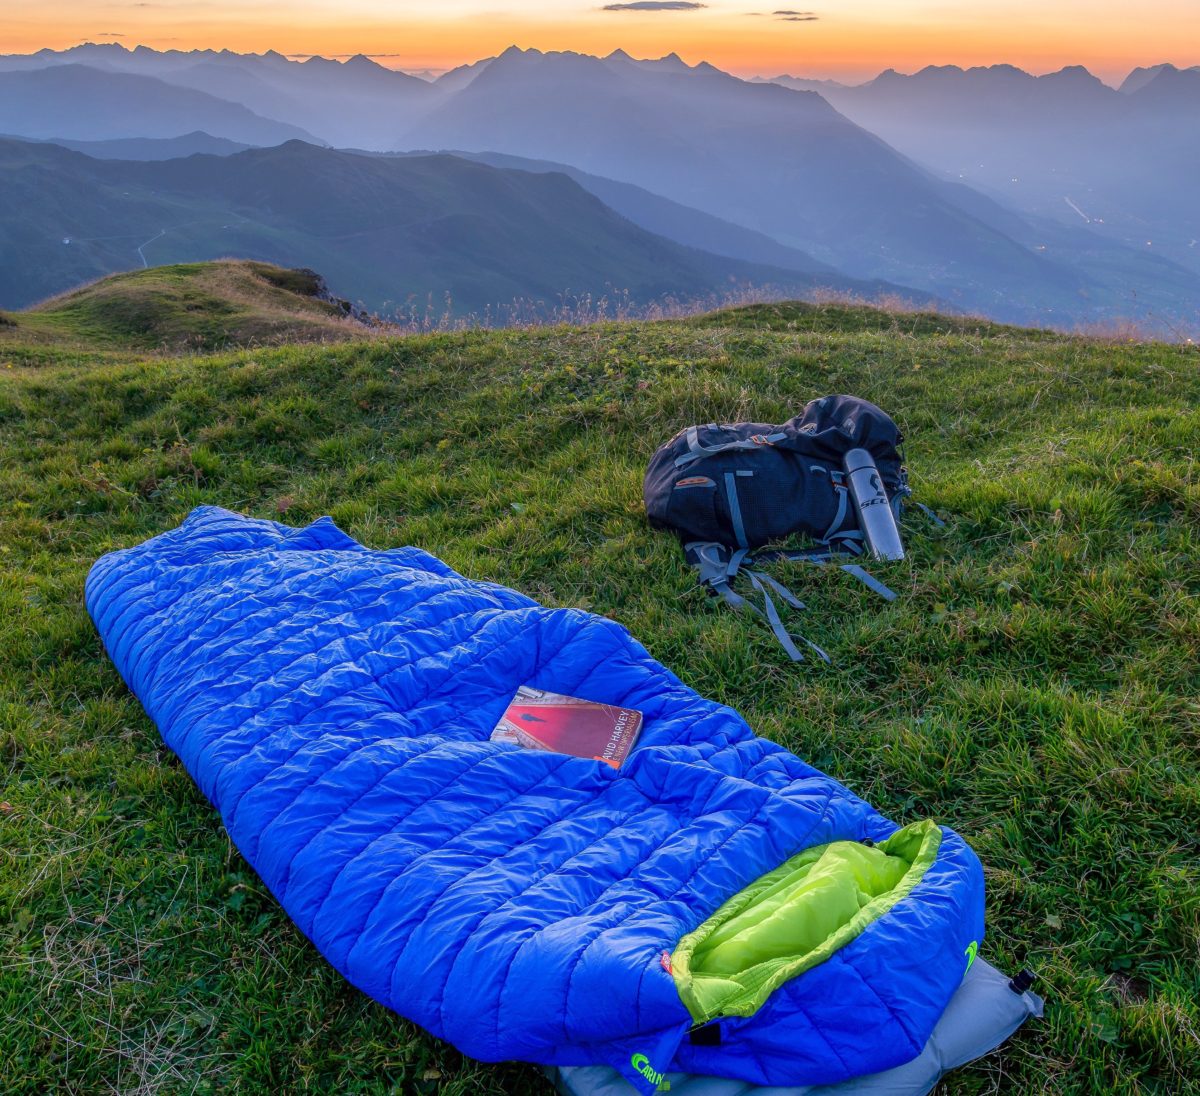 Backpacking sleeping bag on top of mountain.